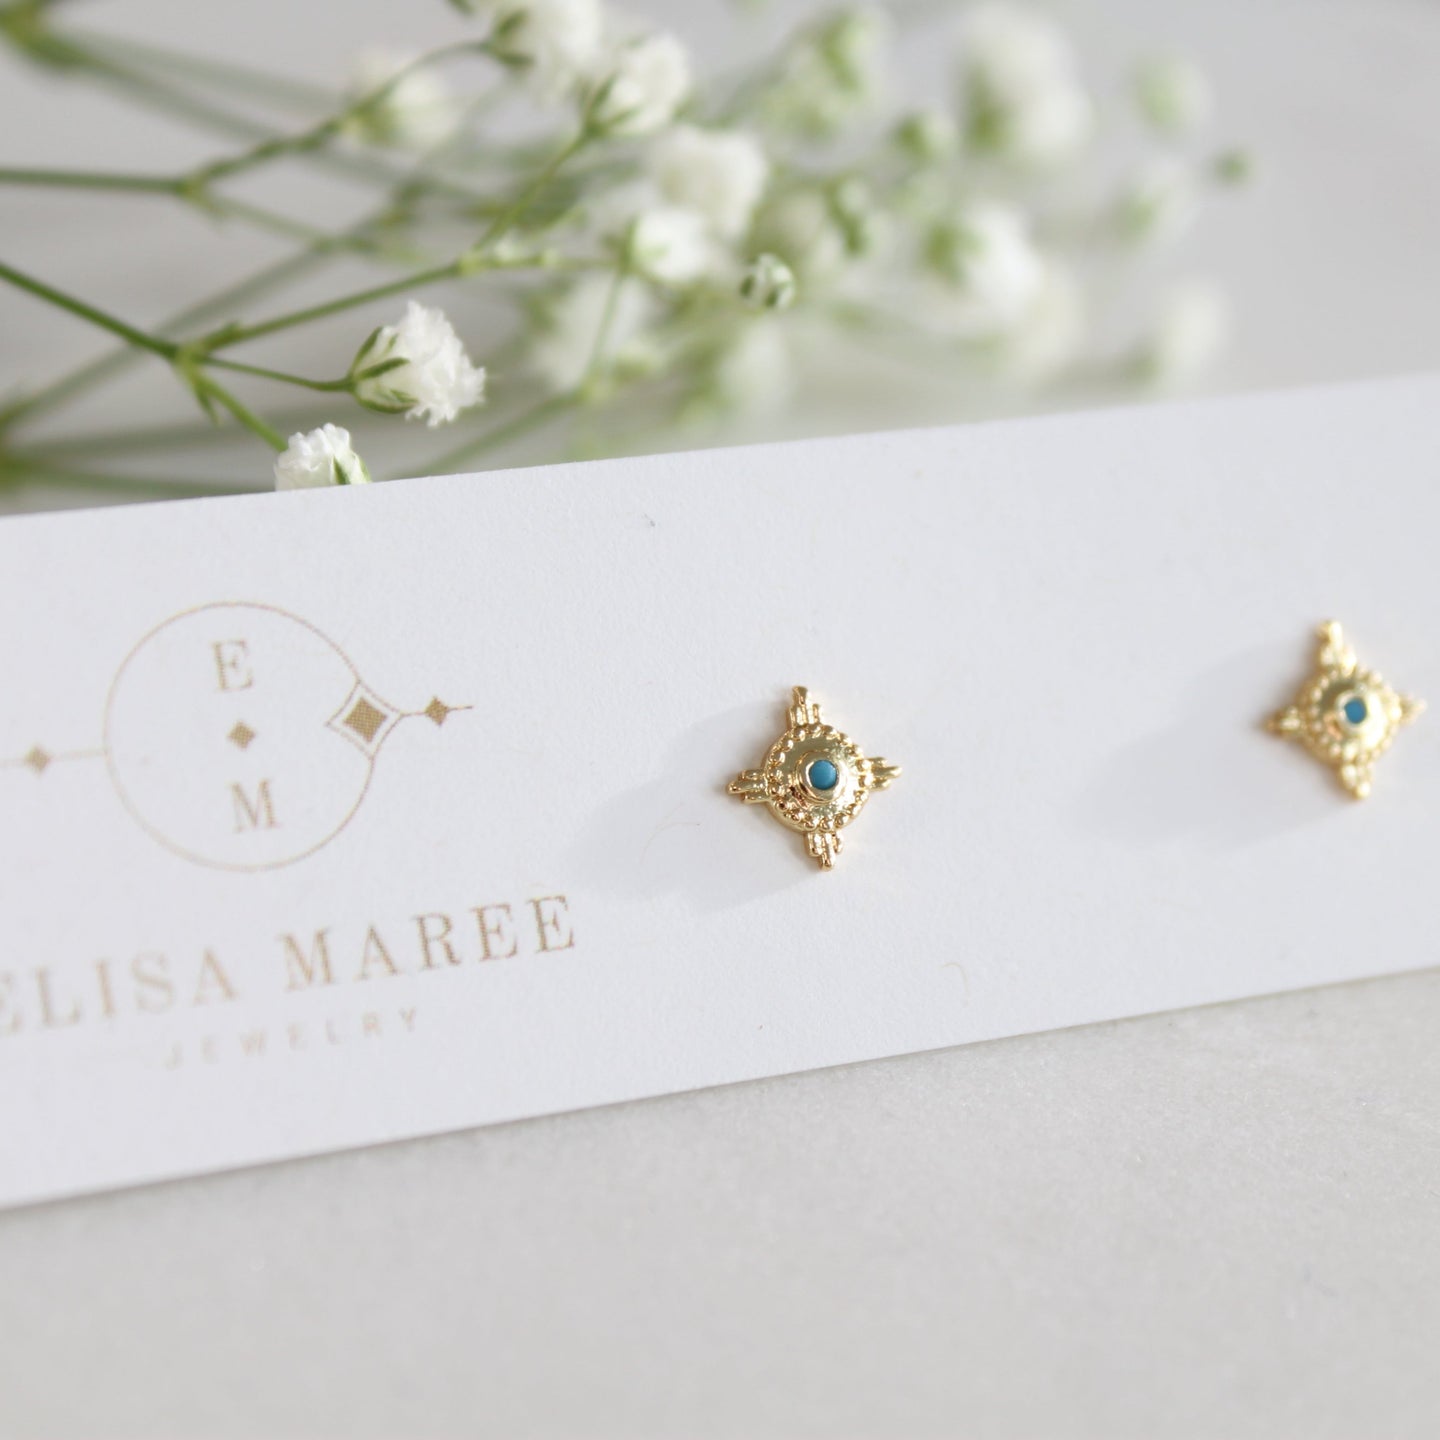 Masika Turquoise Stud Earrings - Elisa Maree Jewelry